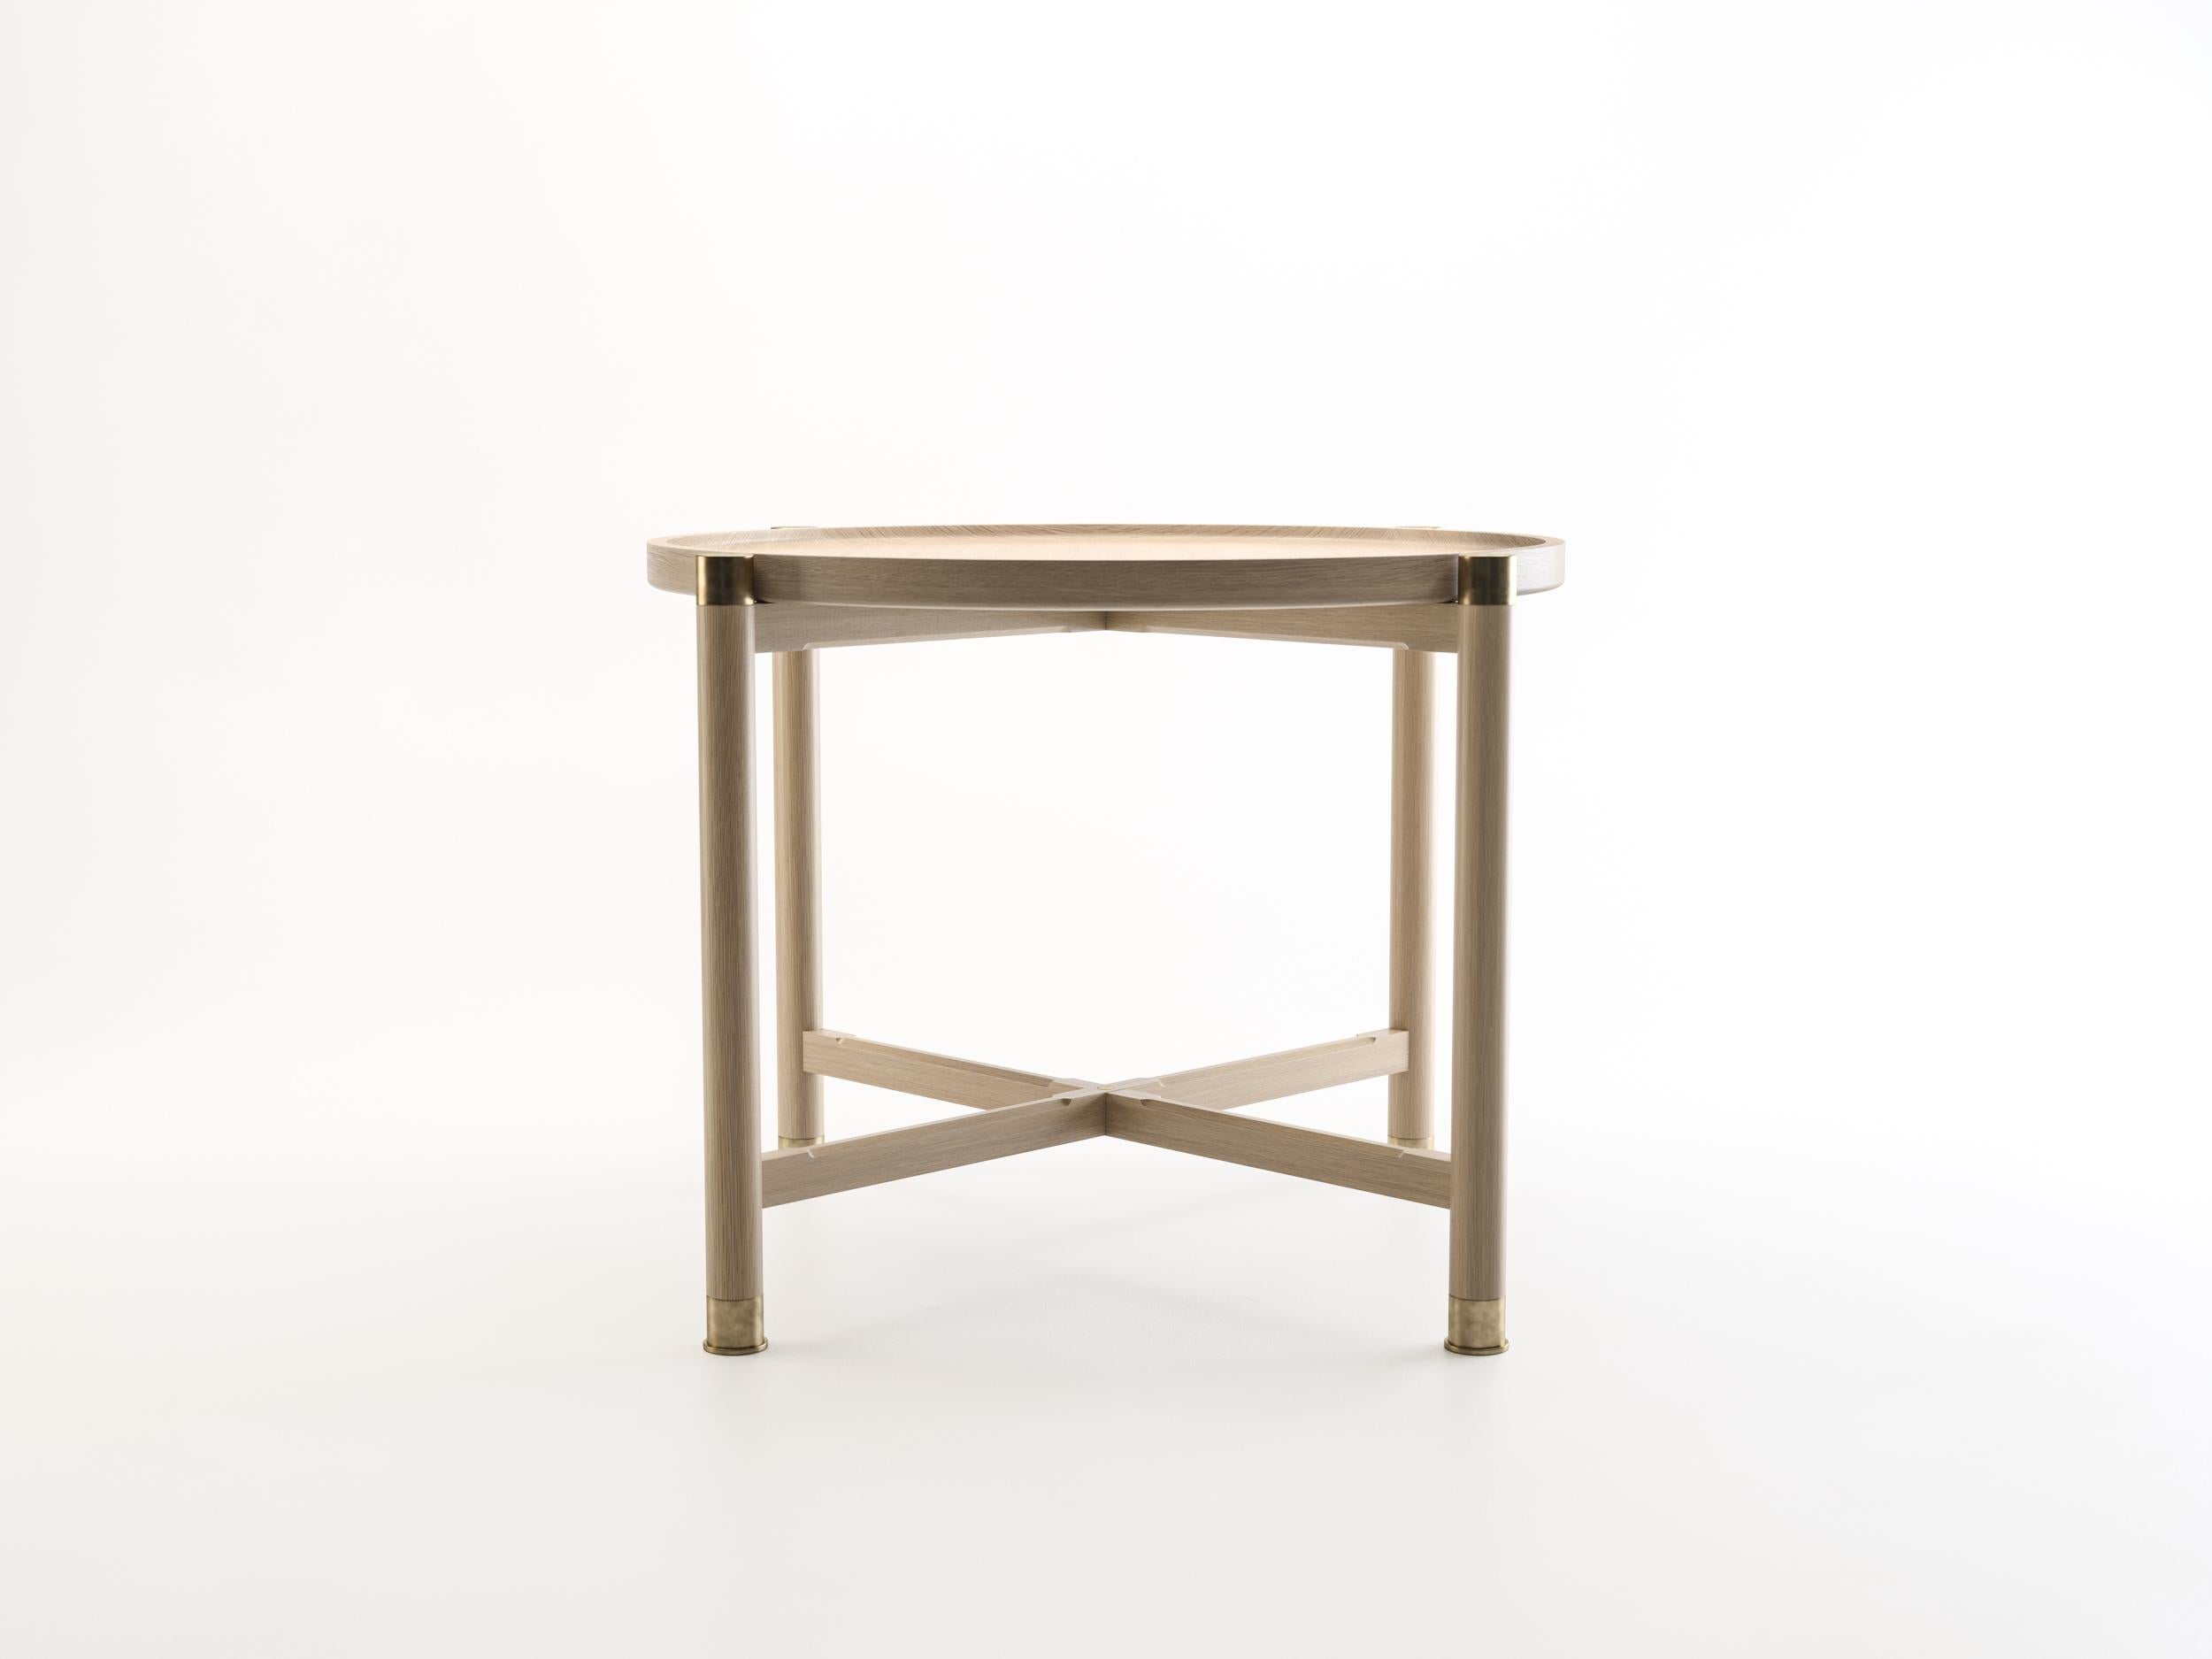 Der Beistelltisch Otto ist ein großzügig bemessener Tisch mit einer schlichten, gut gegliederten Form.
Er ist in Eiche oder Nussbaum erhältlich und zeichnet sich durch eine runde Kuppelplatte, umfangreiche Beschläge aus antikem Messing und elegante,